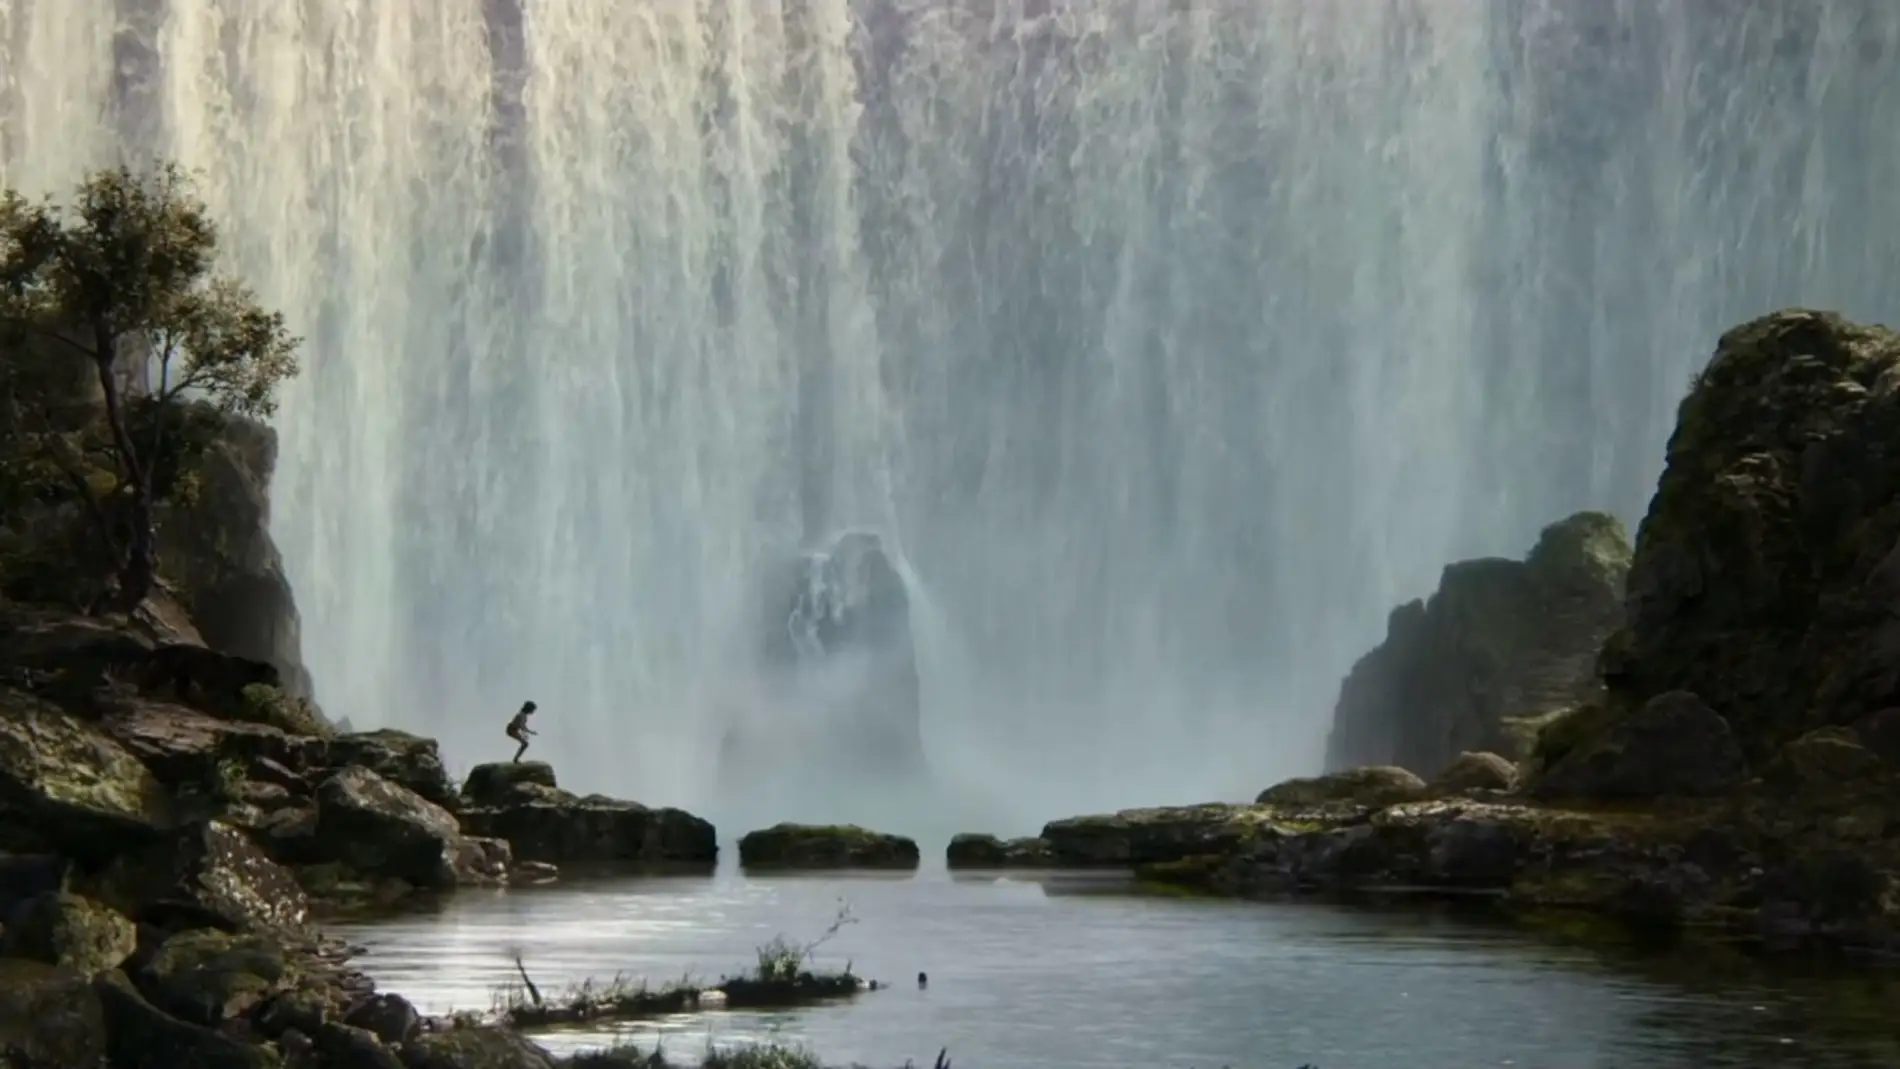 La nueva 'El libro de la selva' adapta algunas escenas del filme de animación